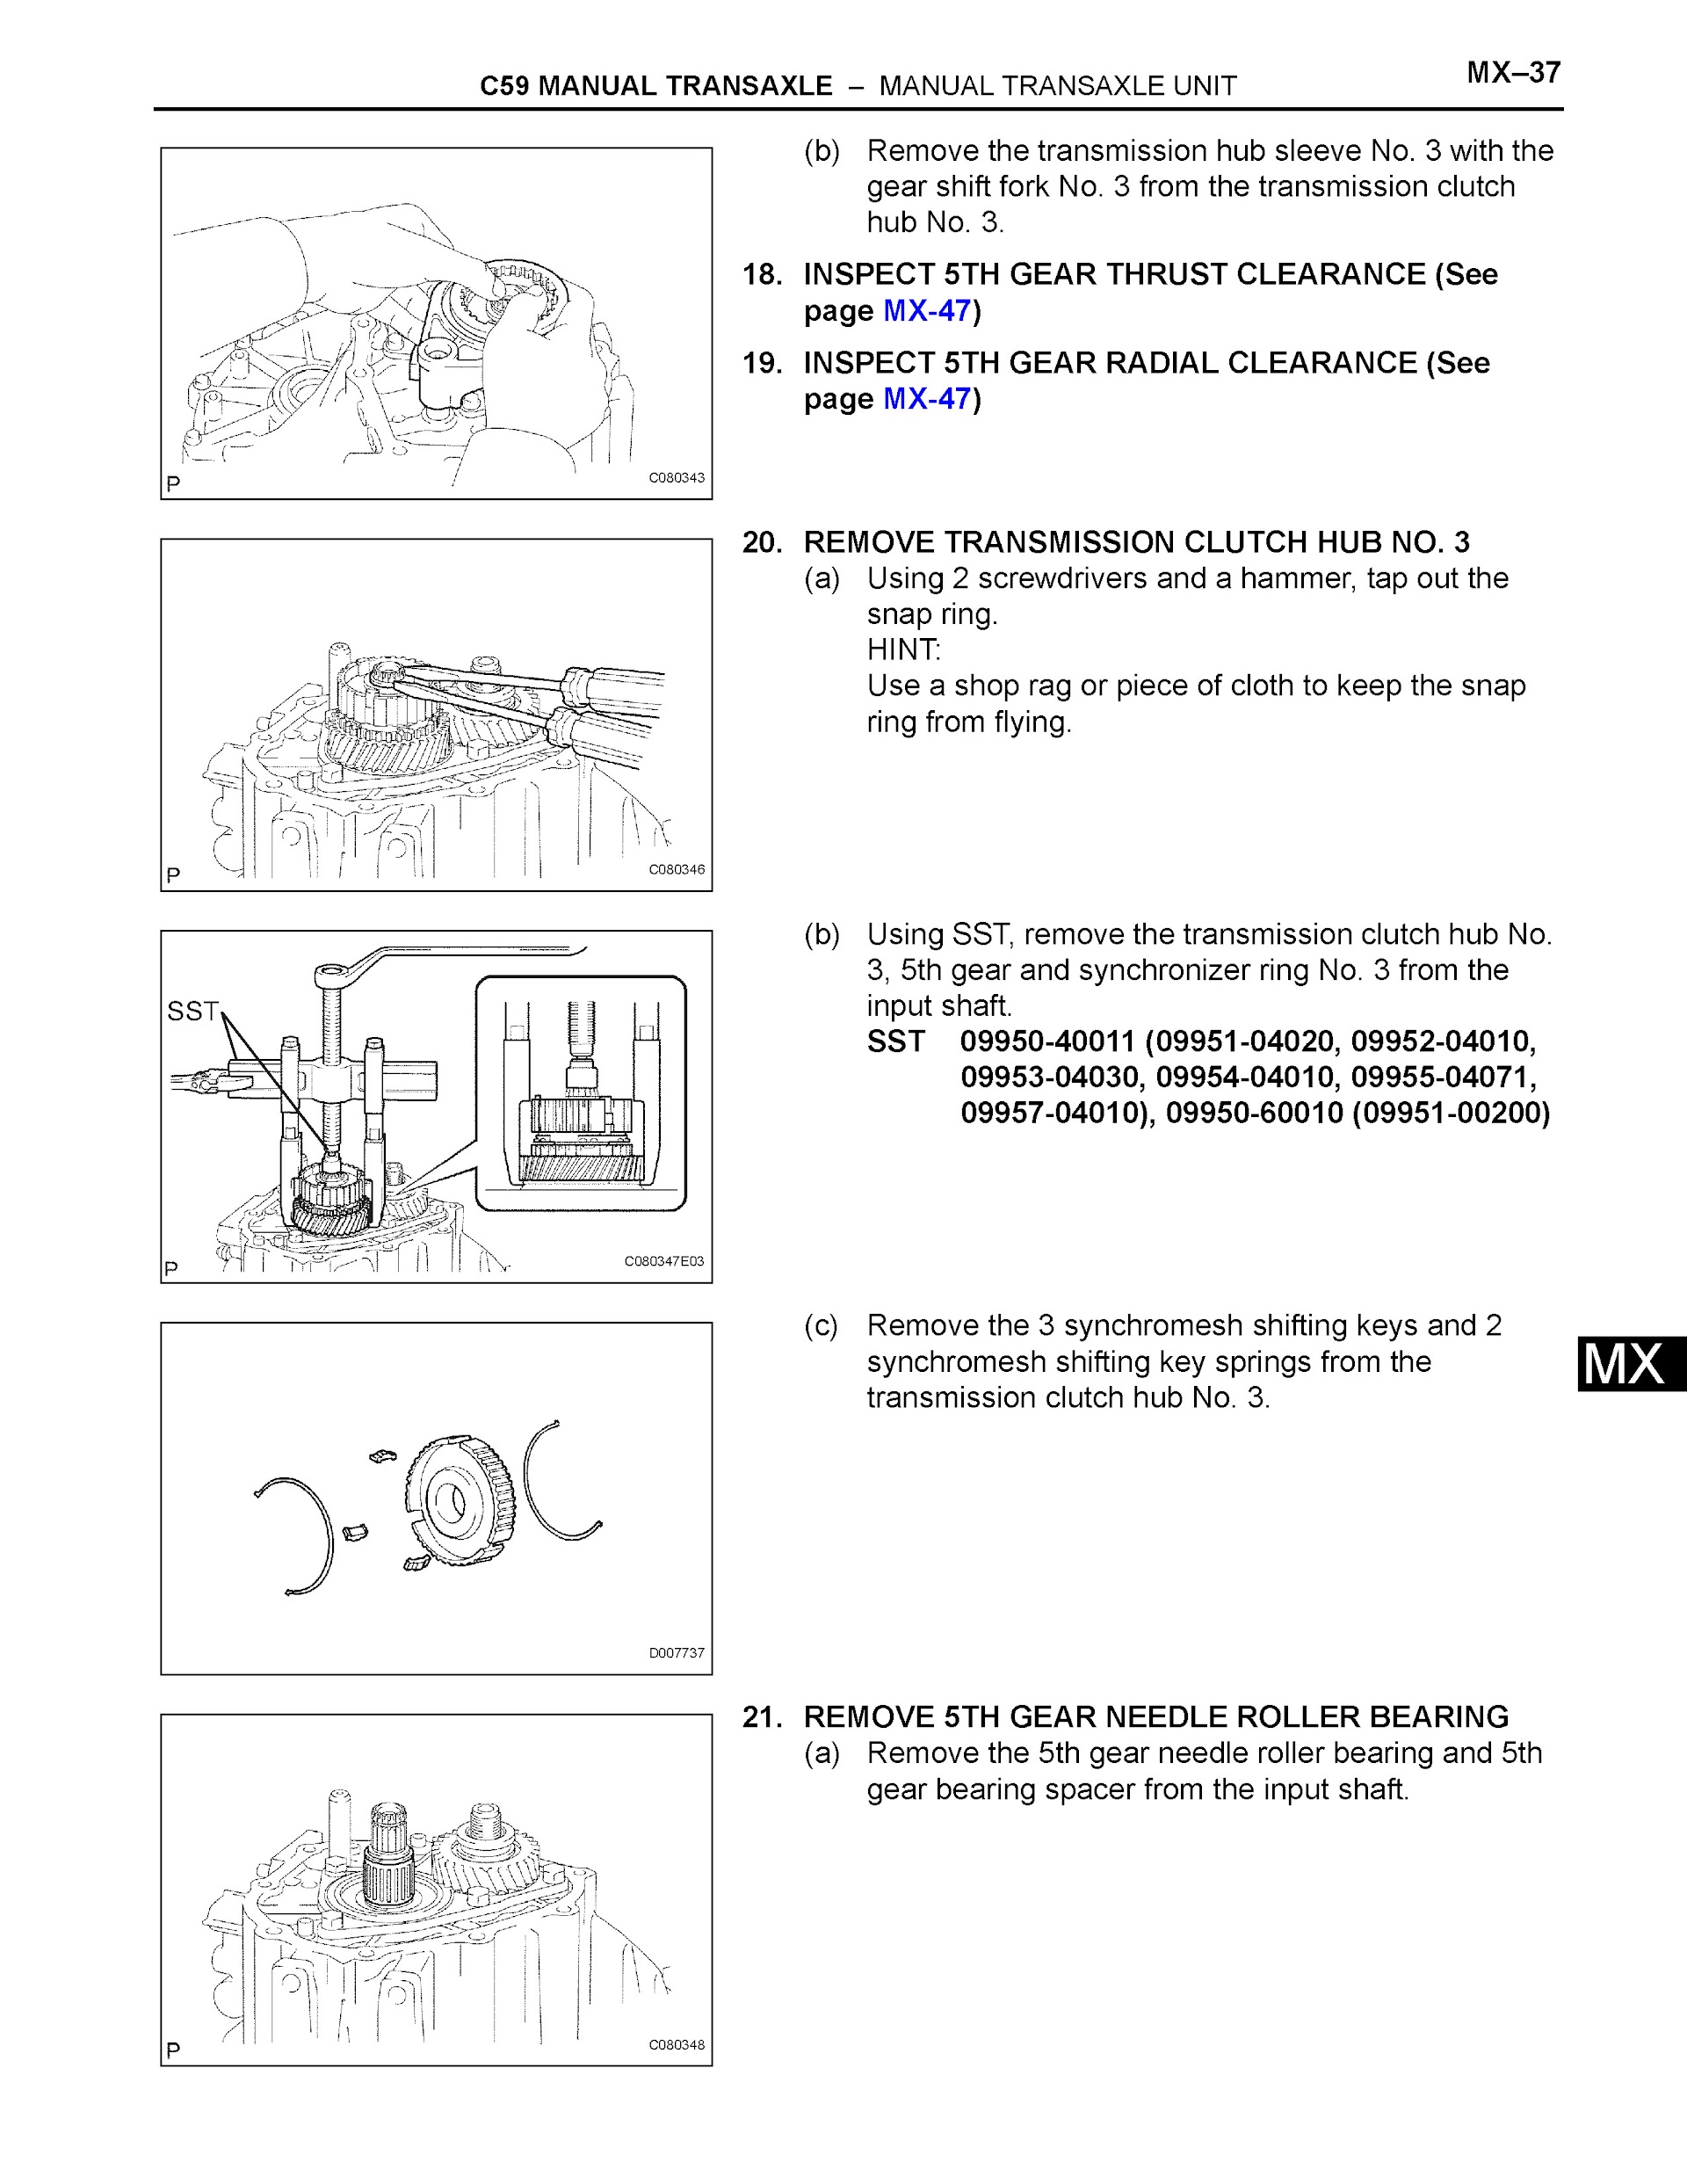 2007 Toyota Matrix Repair Manual, Manual Transaxle Unit